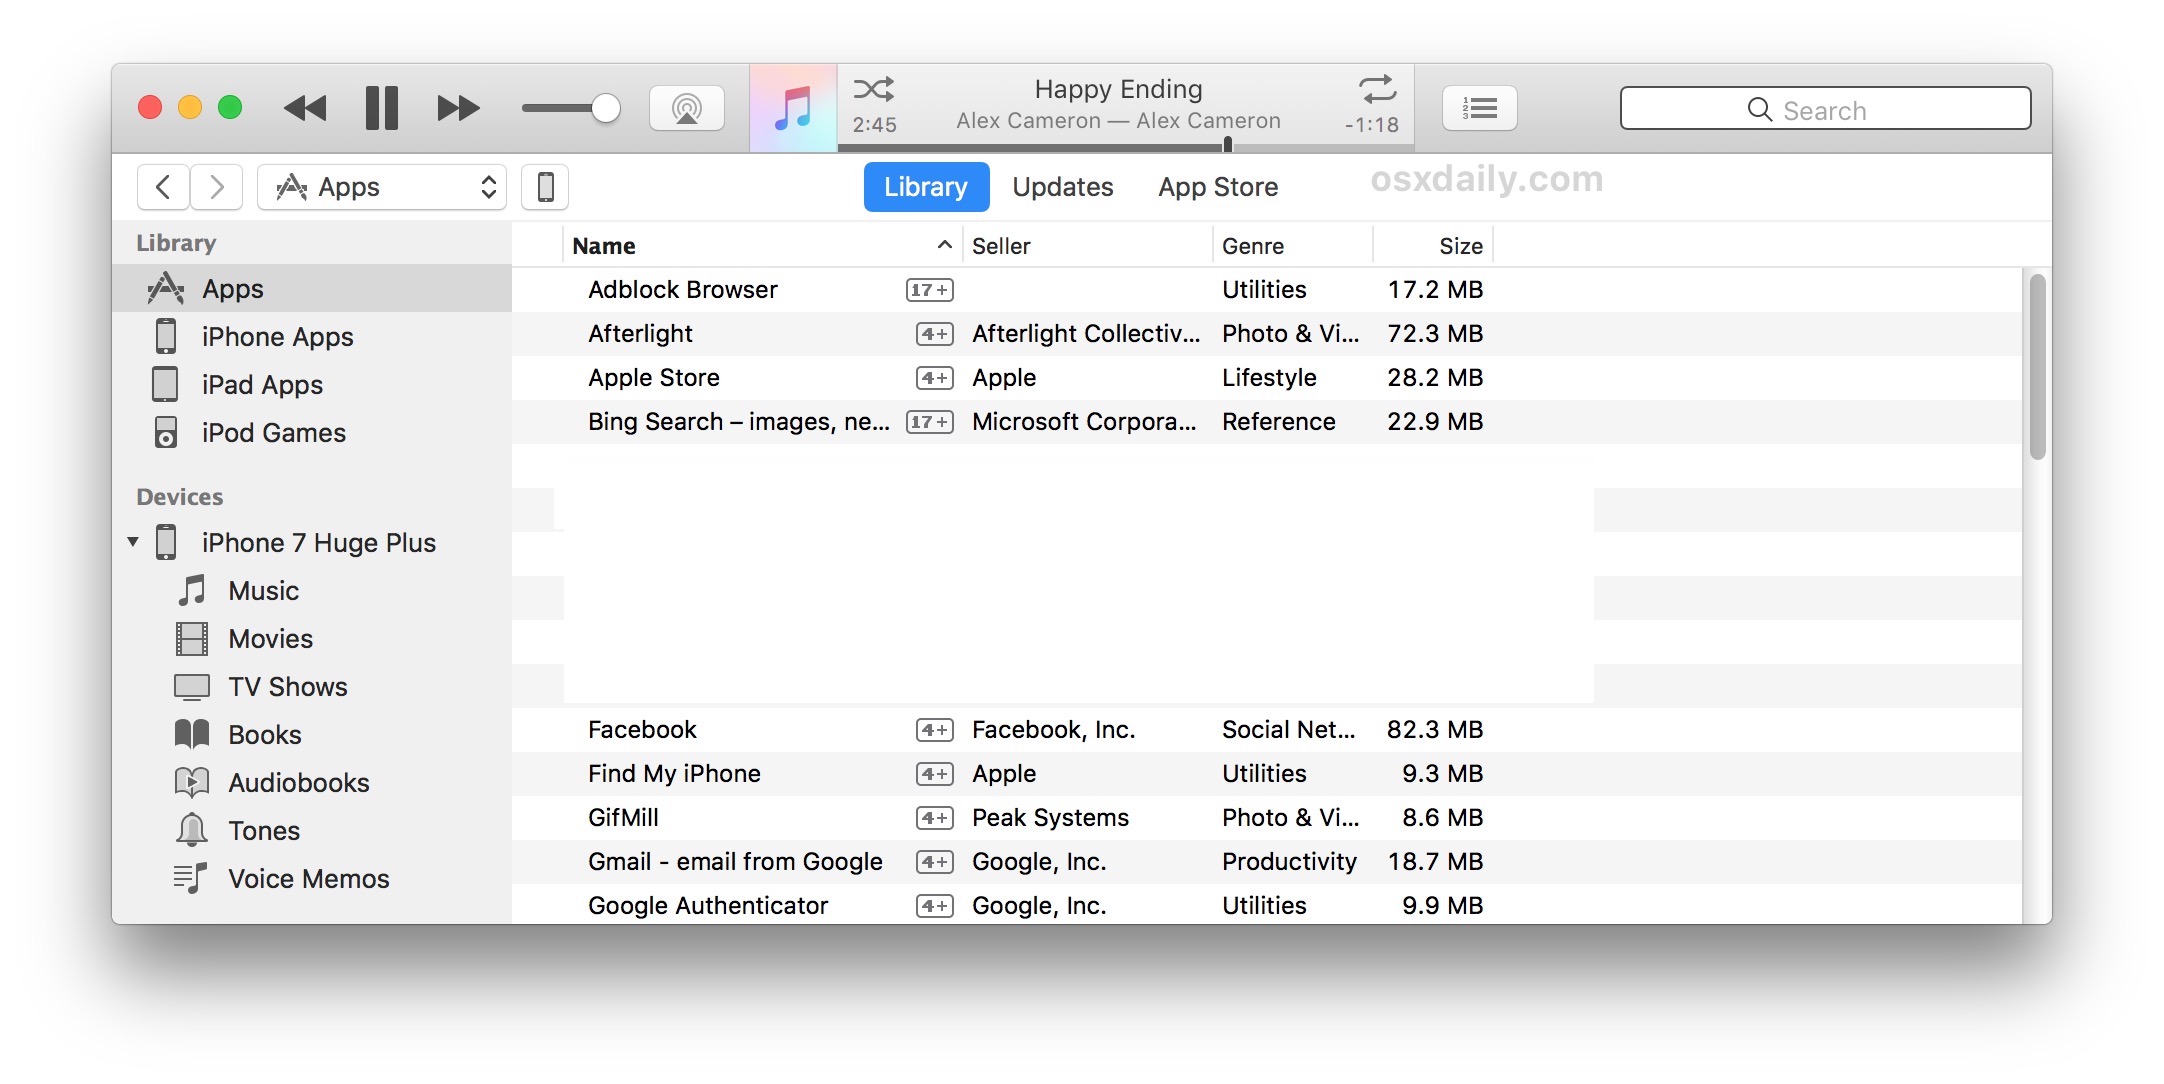 itunes download for mac big sur 11.4